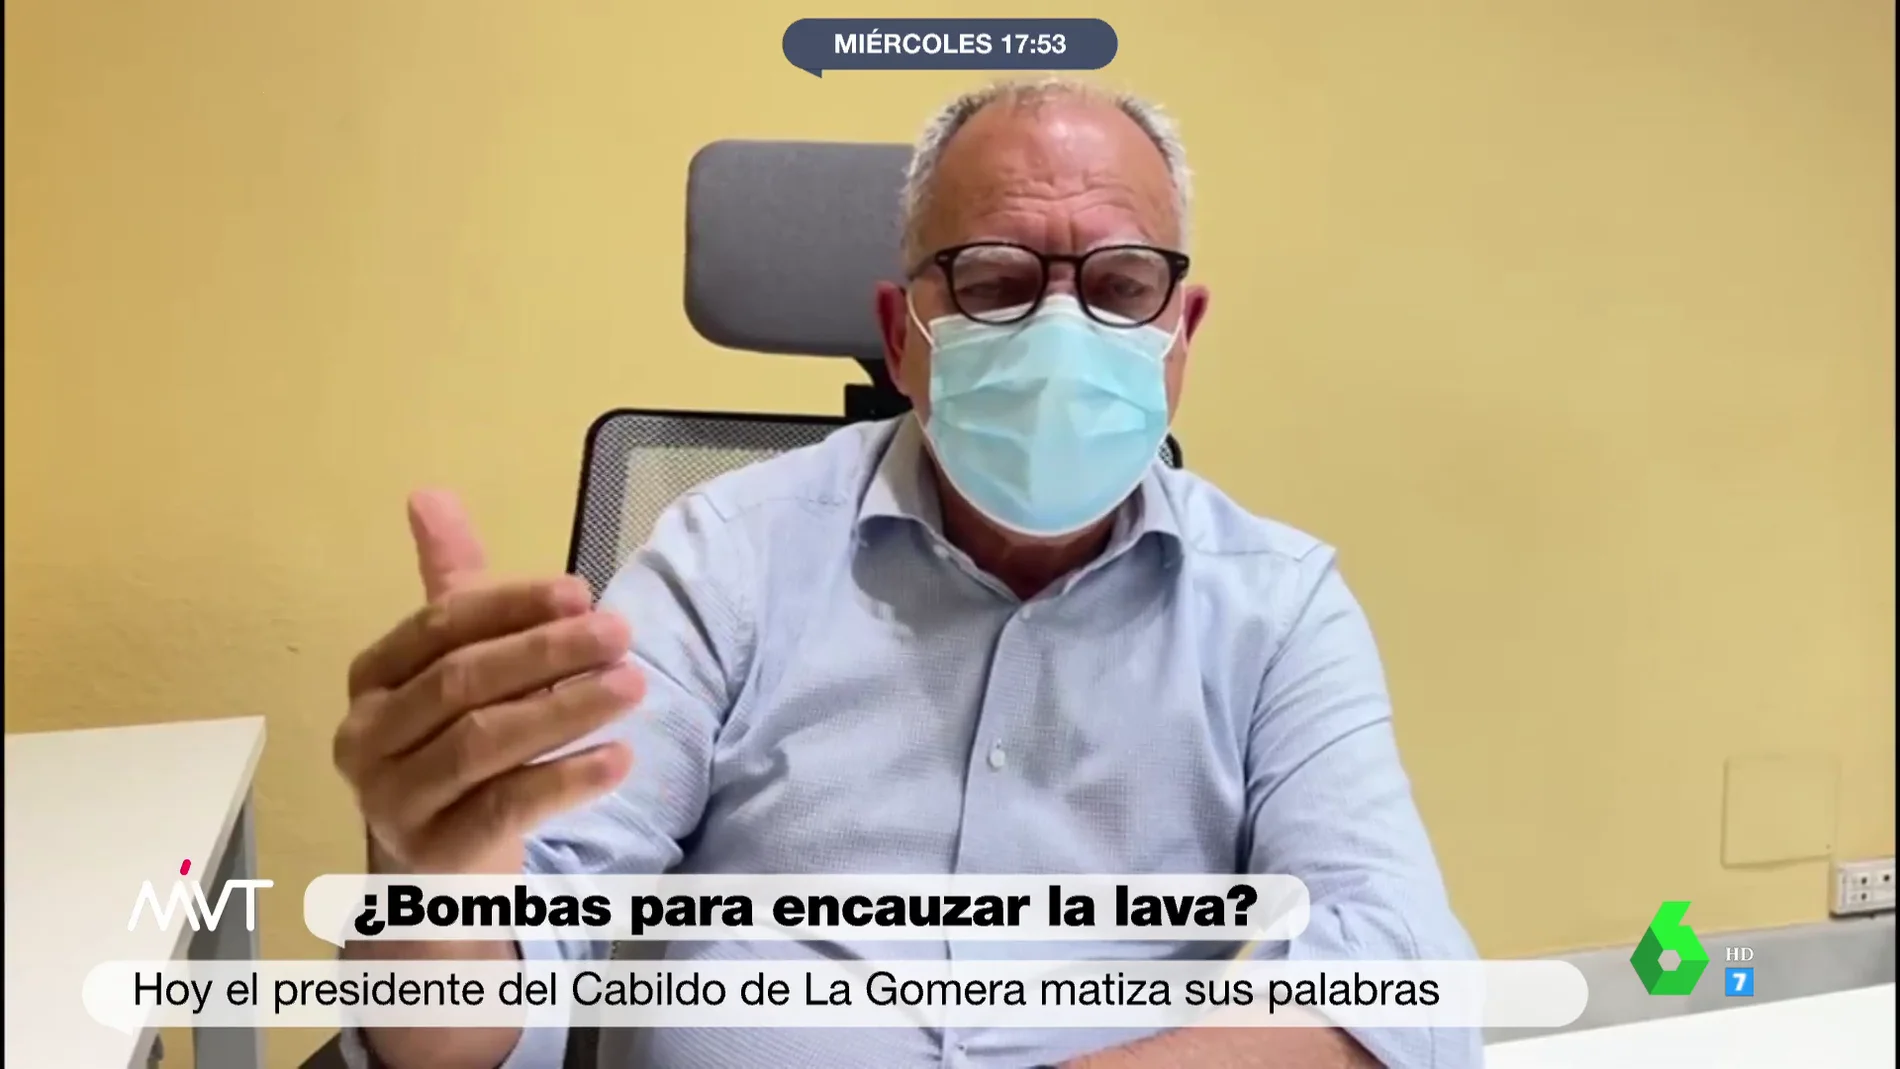 El presidente del Cabildo de La Gomera, indignado por la controversia ante sus palabras sobre el volcán